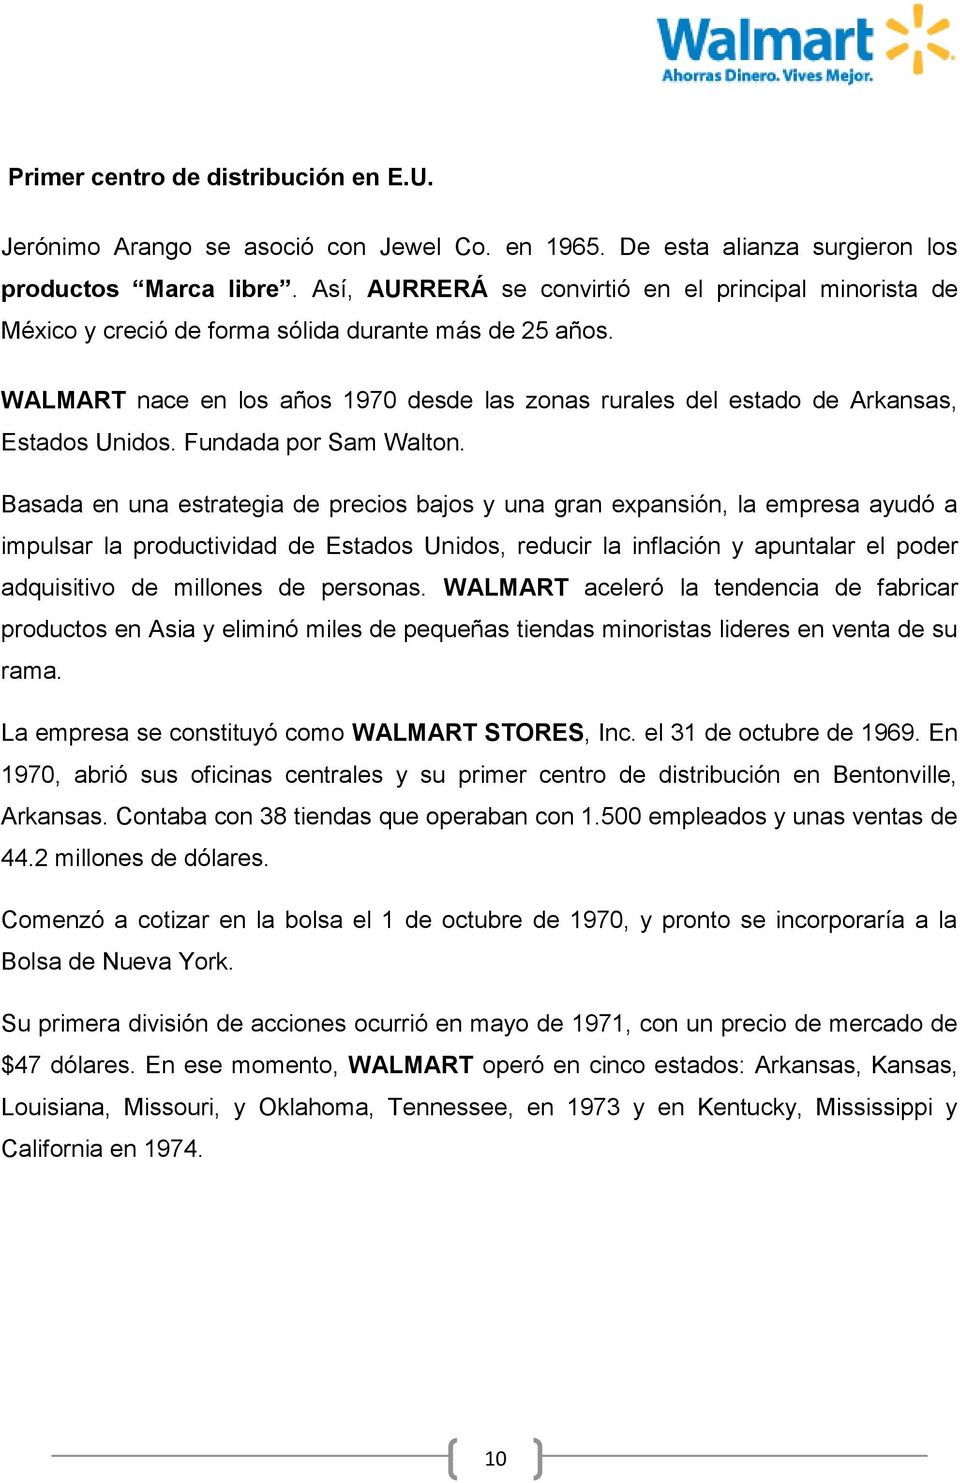 WALMART nace en los años 1970 desde las zonas rurales del estado de Arkansas, Estados Unidos. Fundada por Sam Walton.